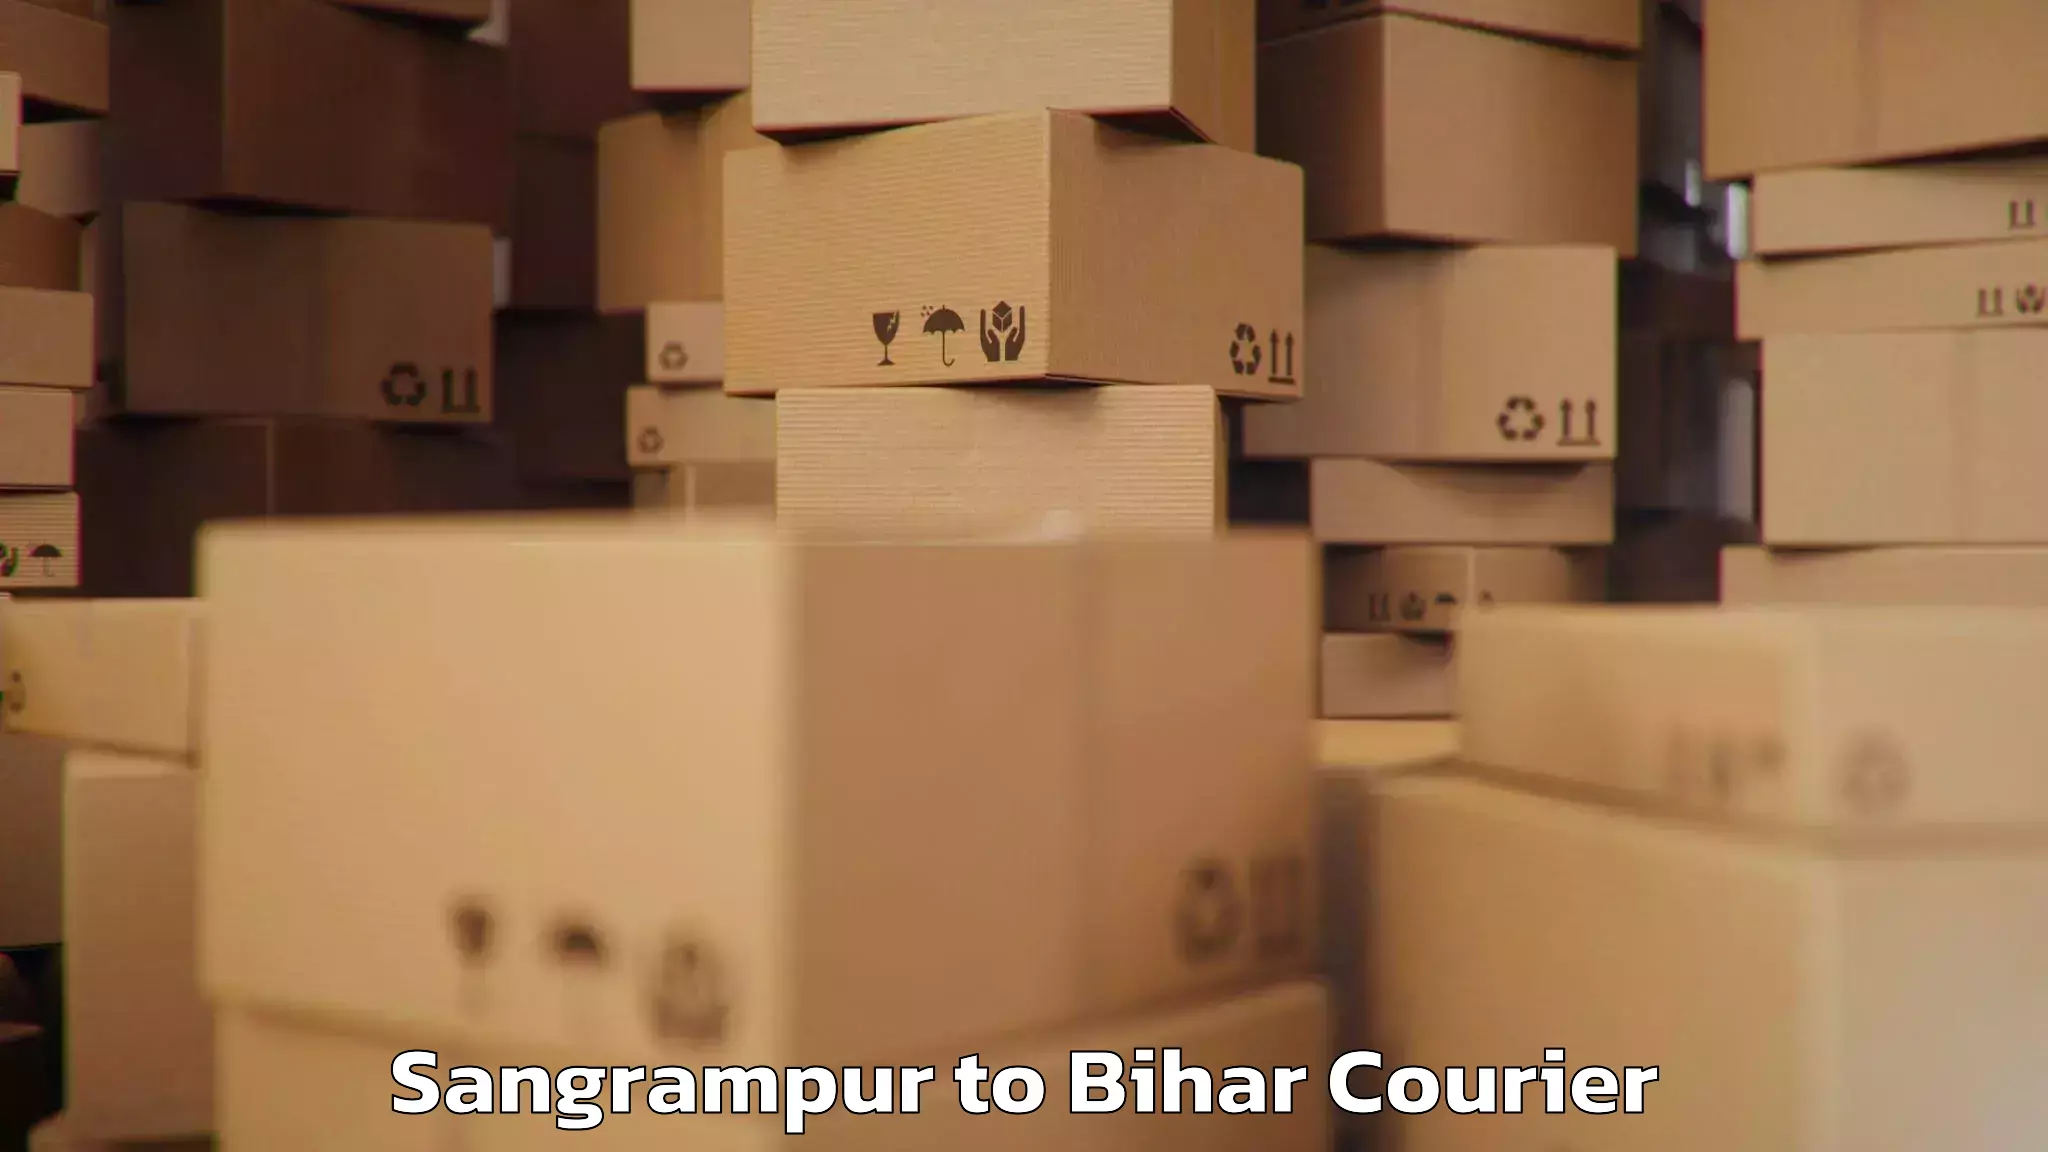 Baggage transport technology Sangrampur to IIT Patna